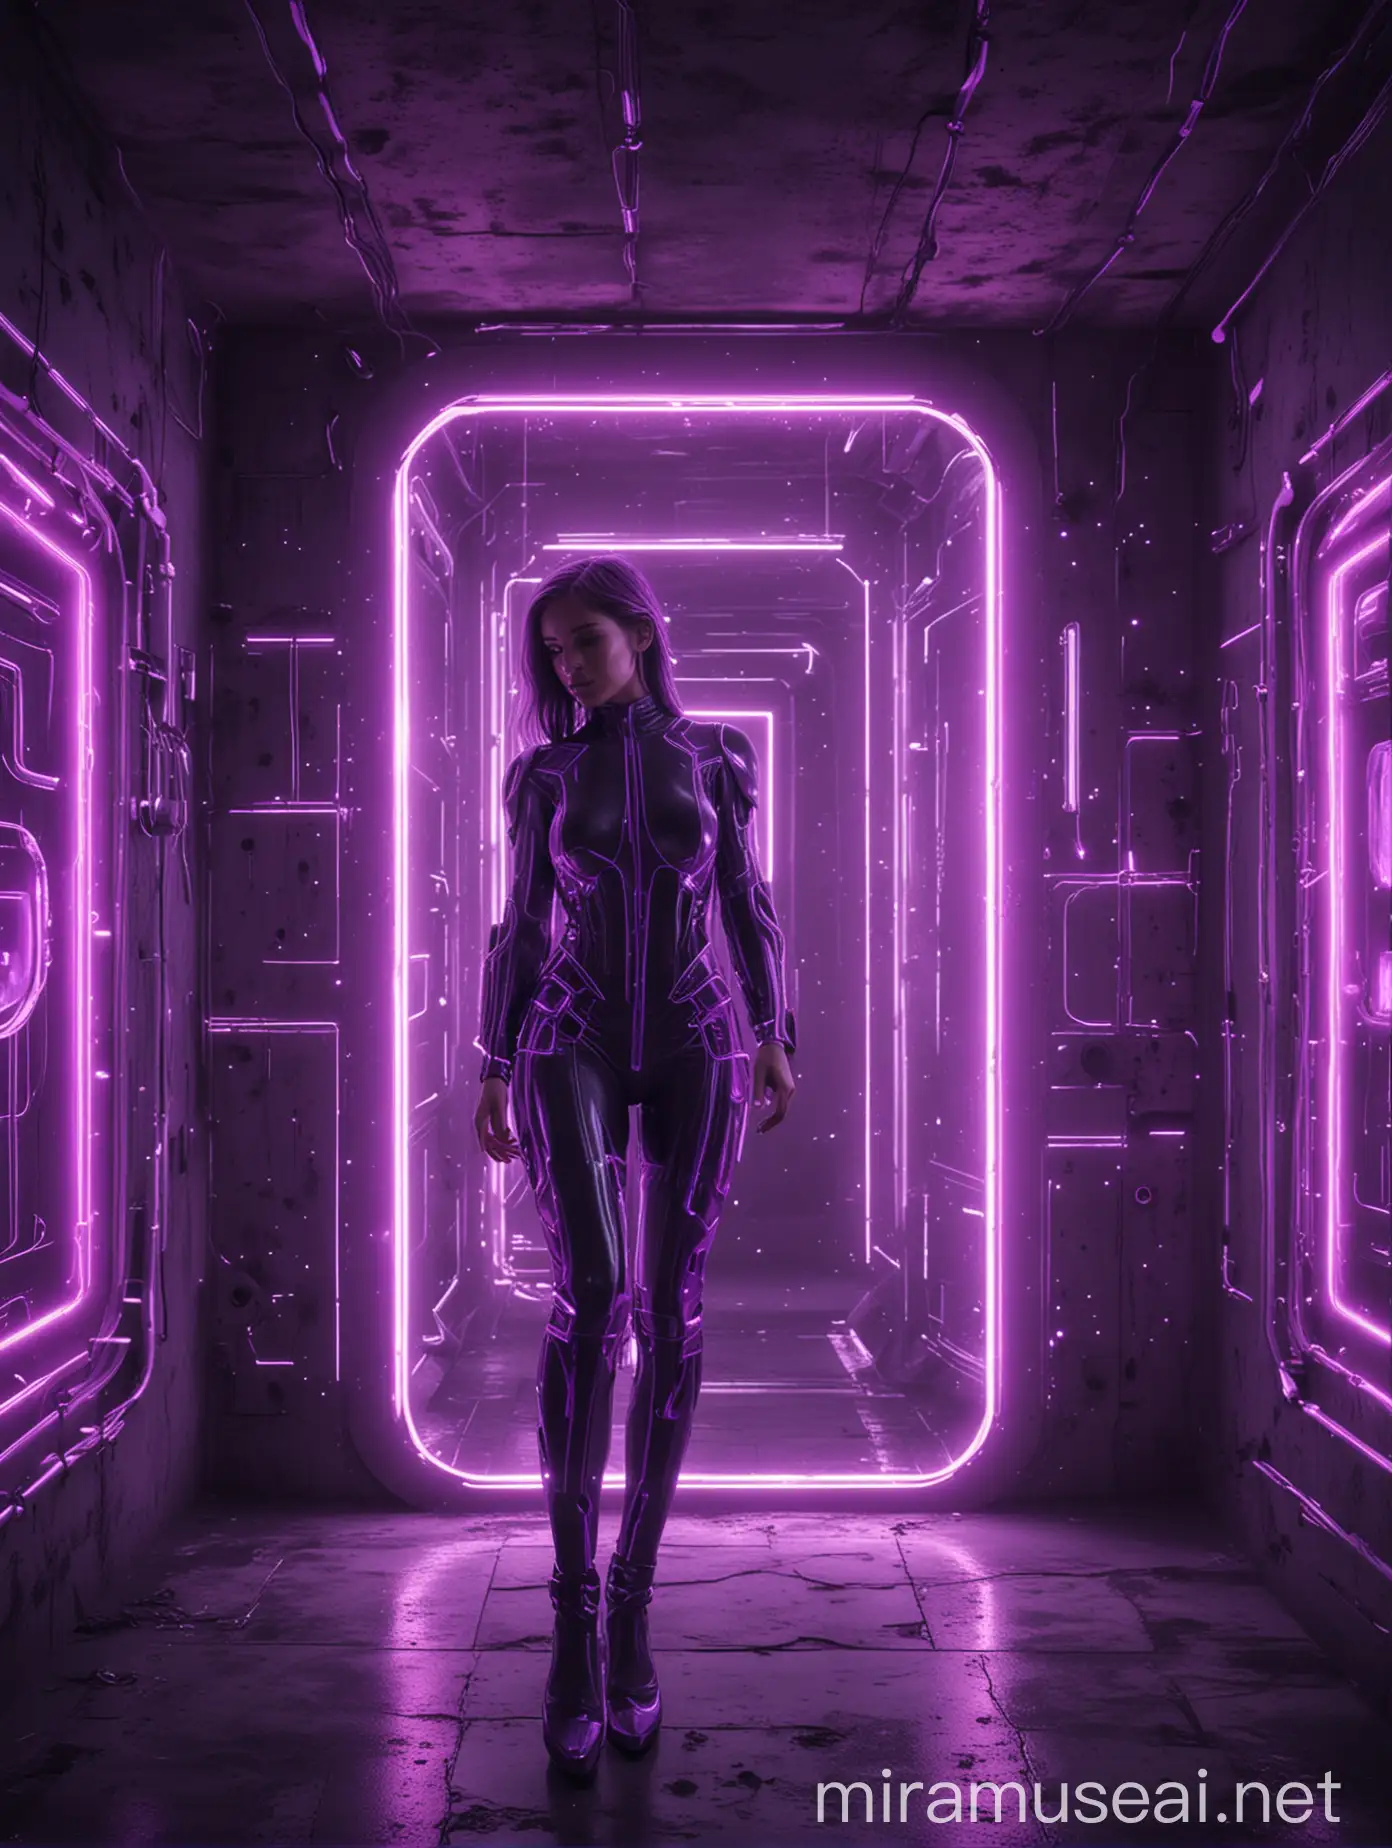 neon futuristic technology, purple color